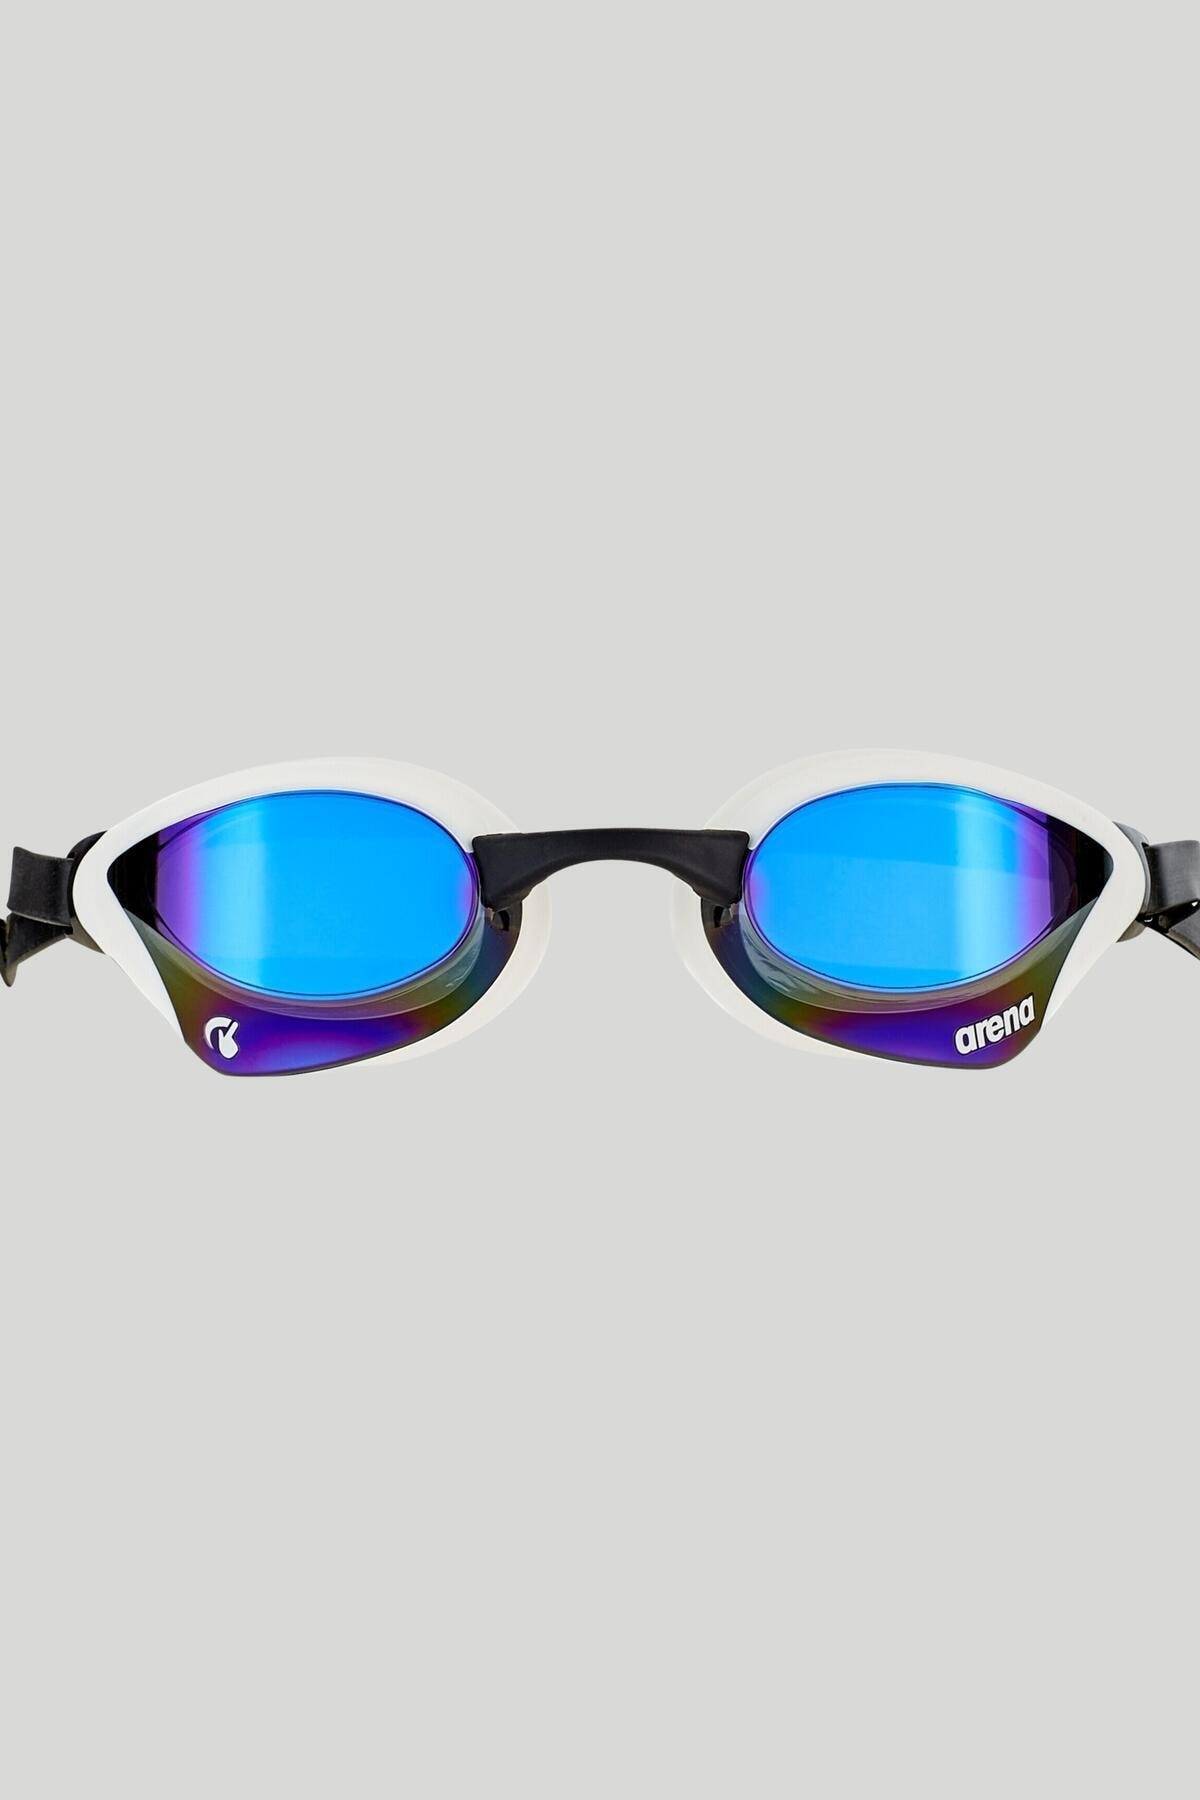 Arena عینک مسابقه ای شنا آینه کبرا کوره آبی و سفید